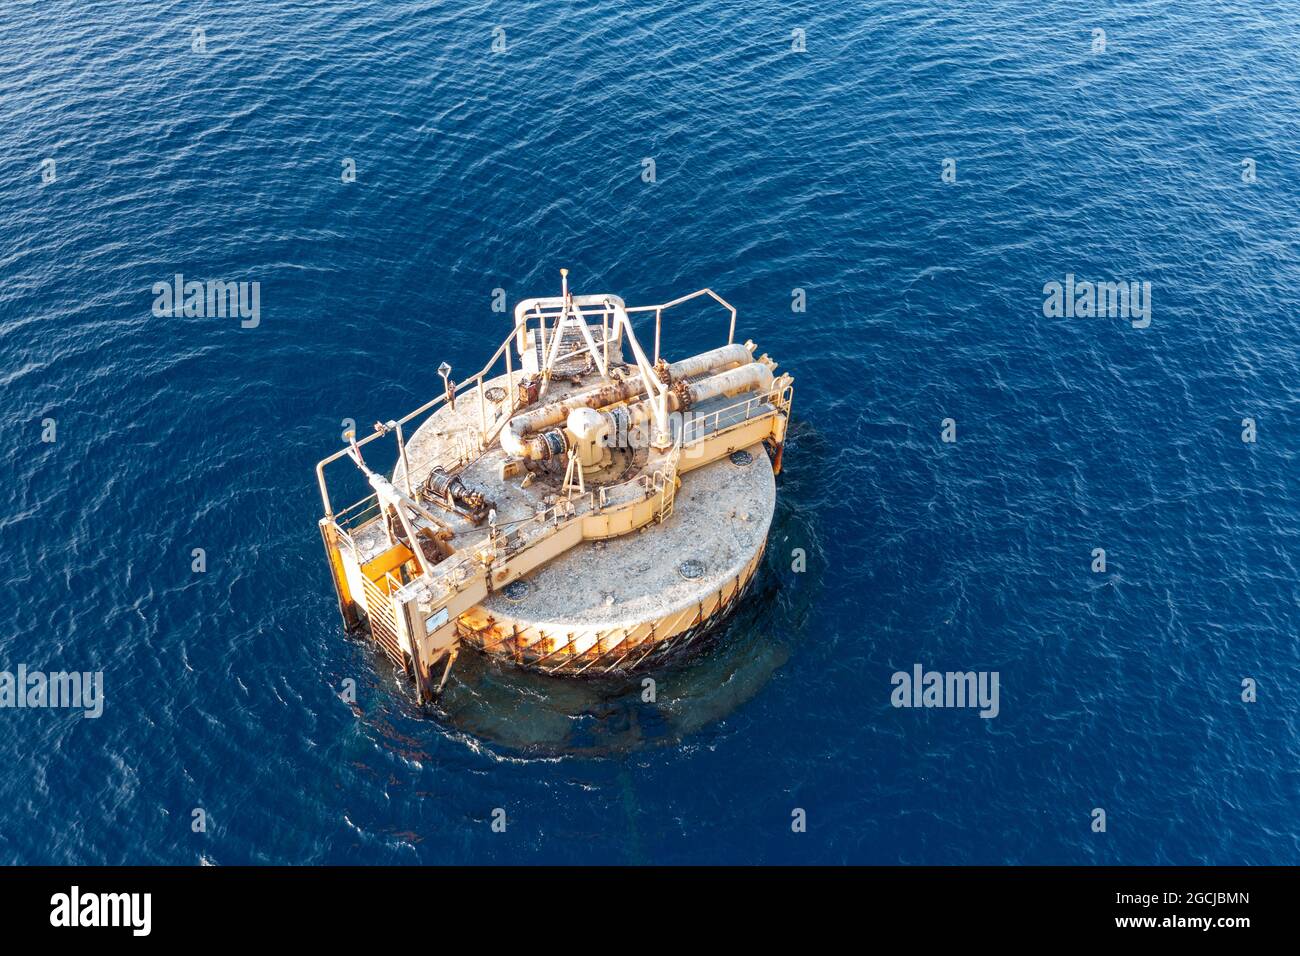 Vista aerea di una piattaforma offshore abbandonata con condotte in alto mare o oceano . Foto di alta qualità Foto Stock